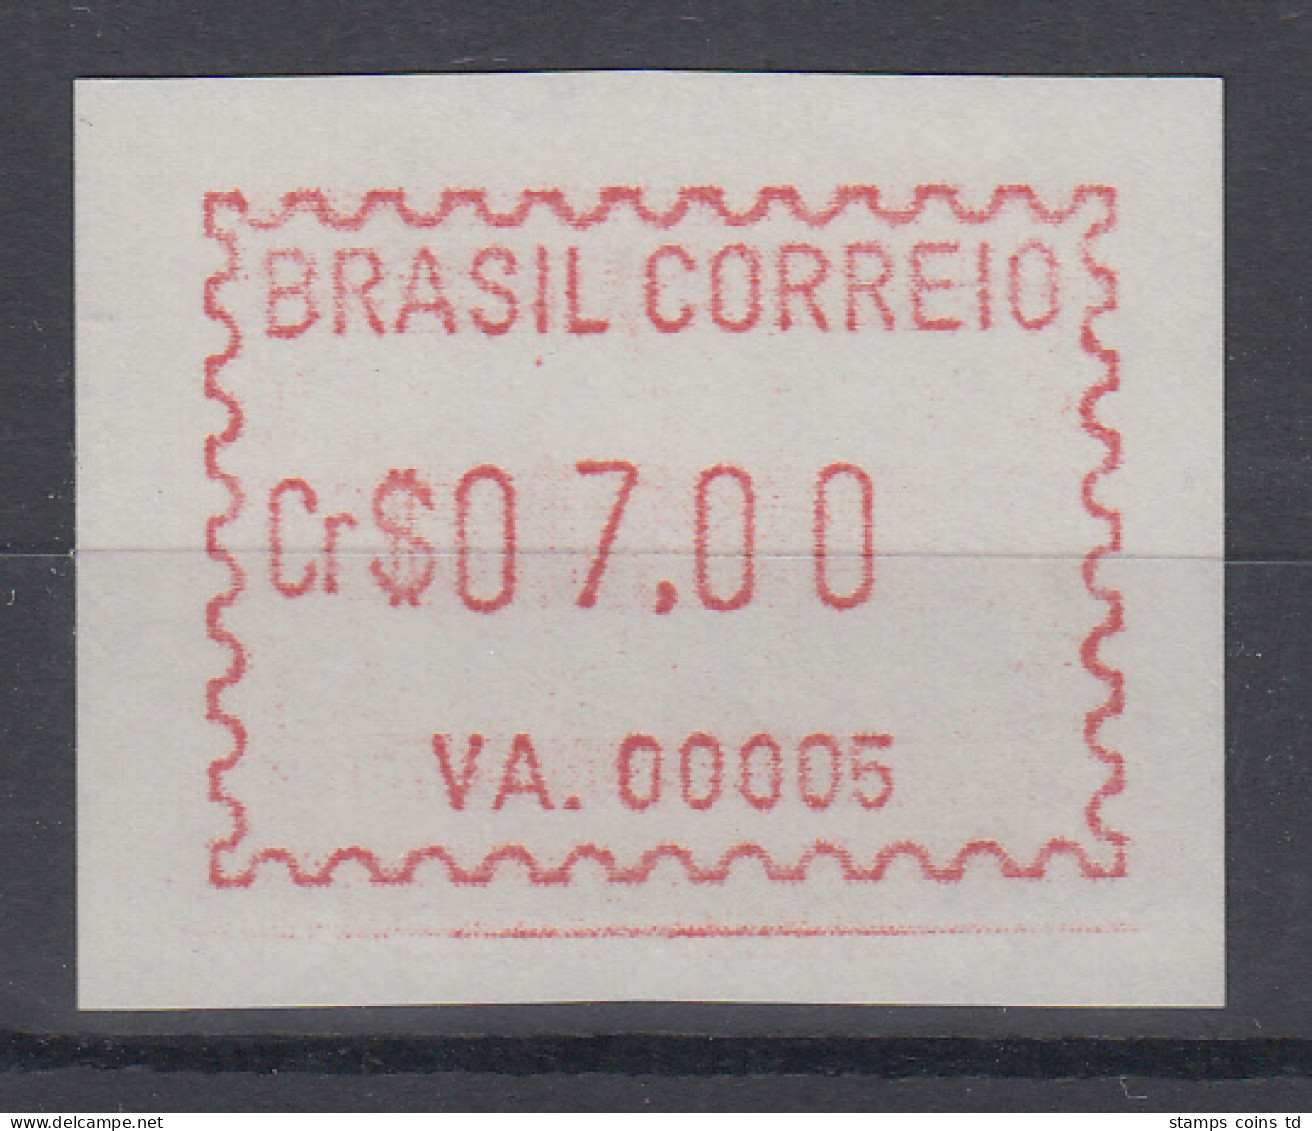 Brasilien FRAMA-ATM VA.00005, Wert 07,00 Cr$, Von VS **  - Viñetas De Franqueo (Frama)